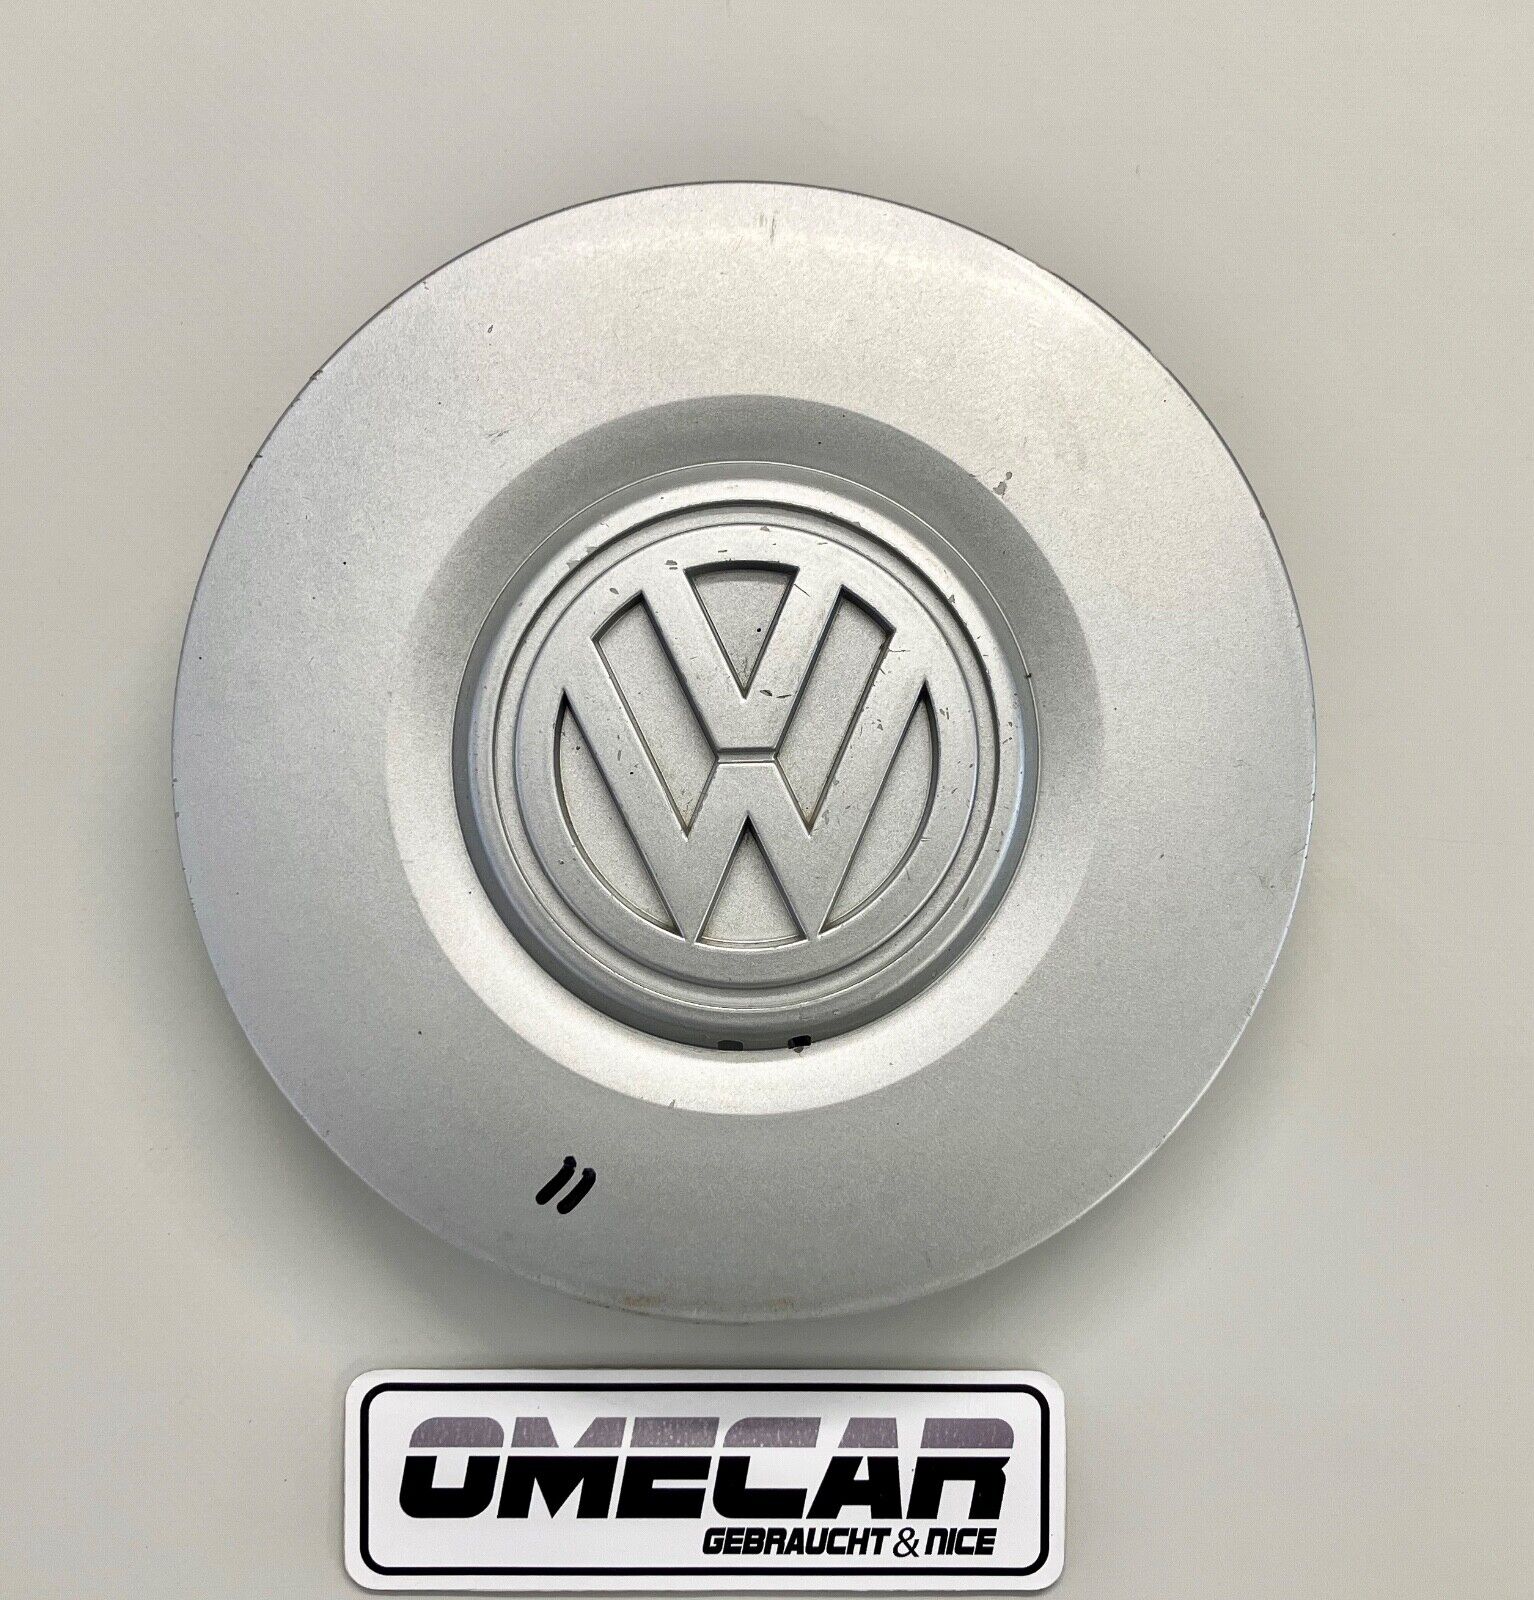 VW Abdeckkappe Felgendeckel Nabendeckel Deckel Felge 1H0601149 A -  Ersatzteile in Originalqualität für alle VW Golf 2 Modelle Typ 19E / MK2 -  Lager von Neuteilen und Gebrauchtteilen